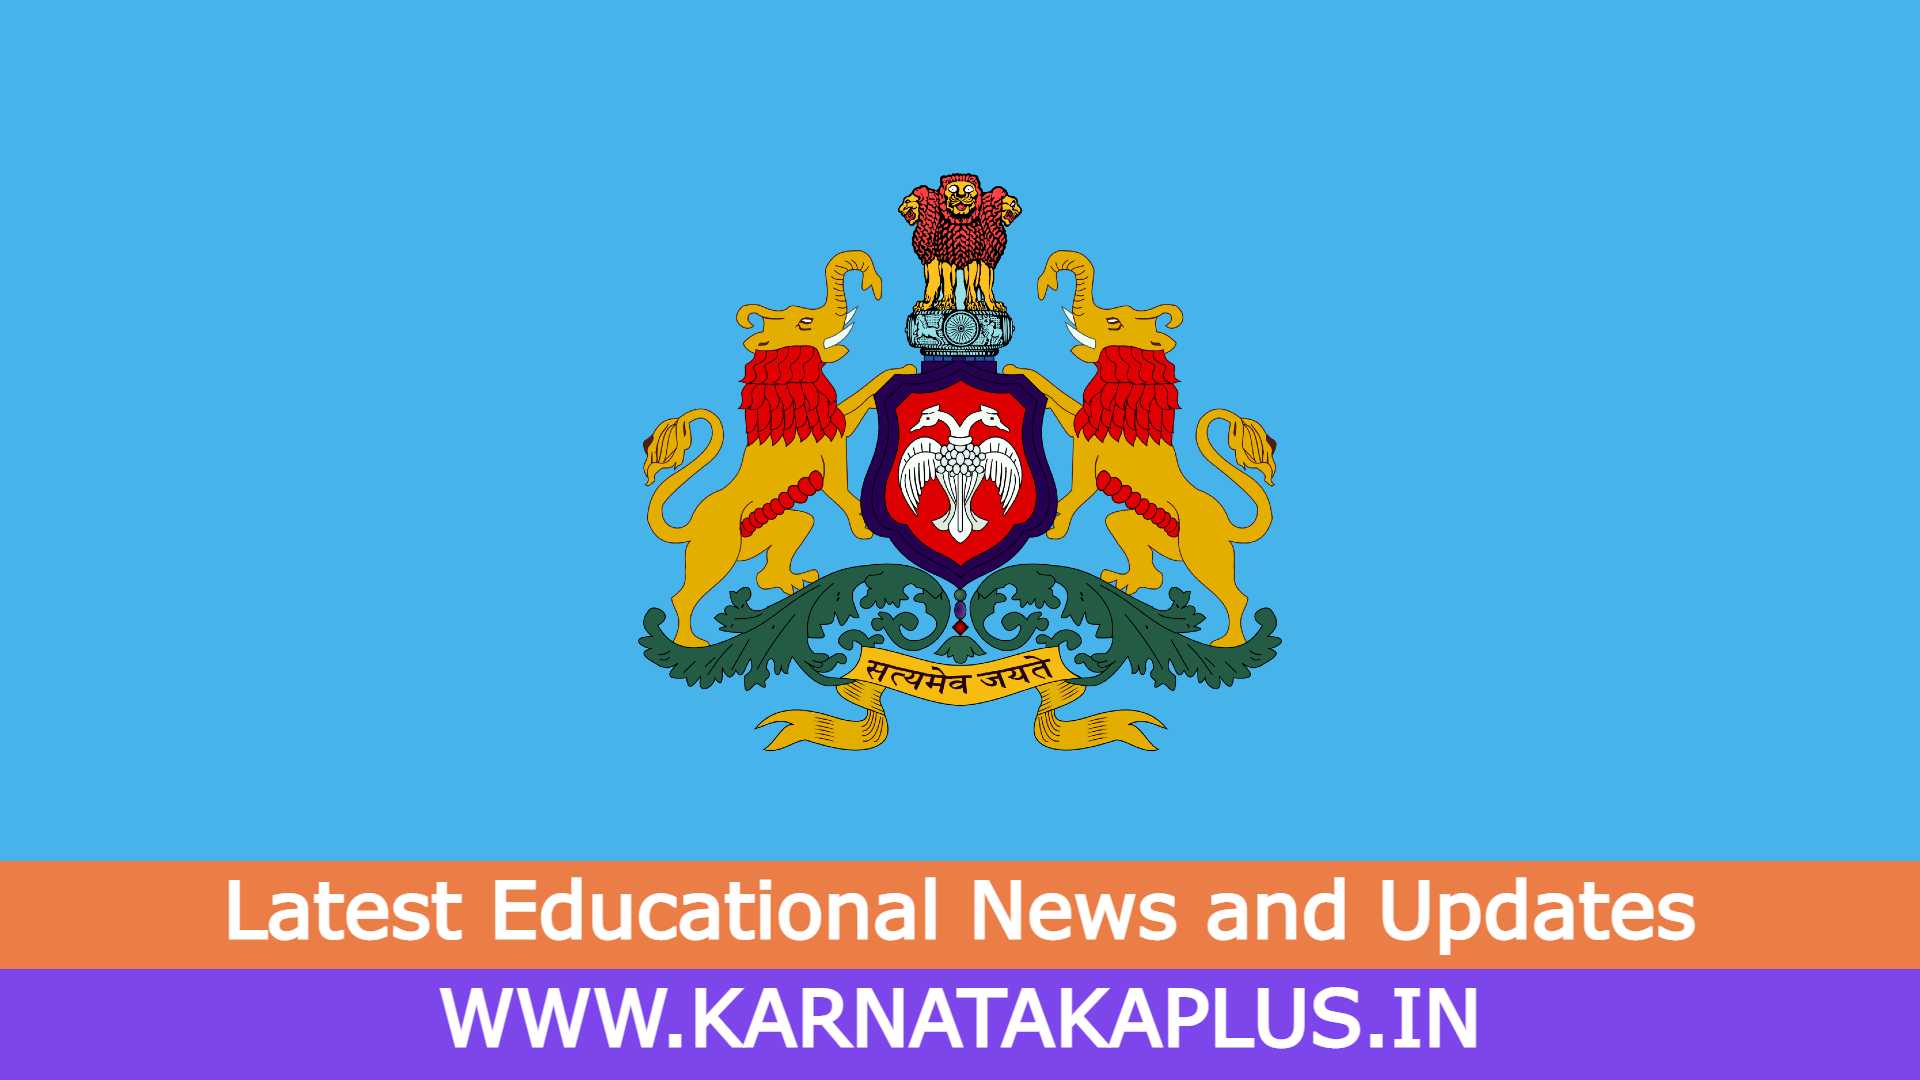 Karnataka Plus Upcoming Notification 2021-22